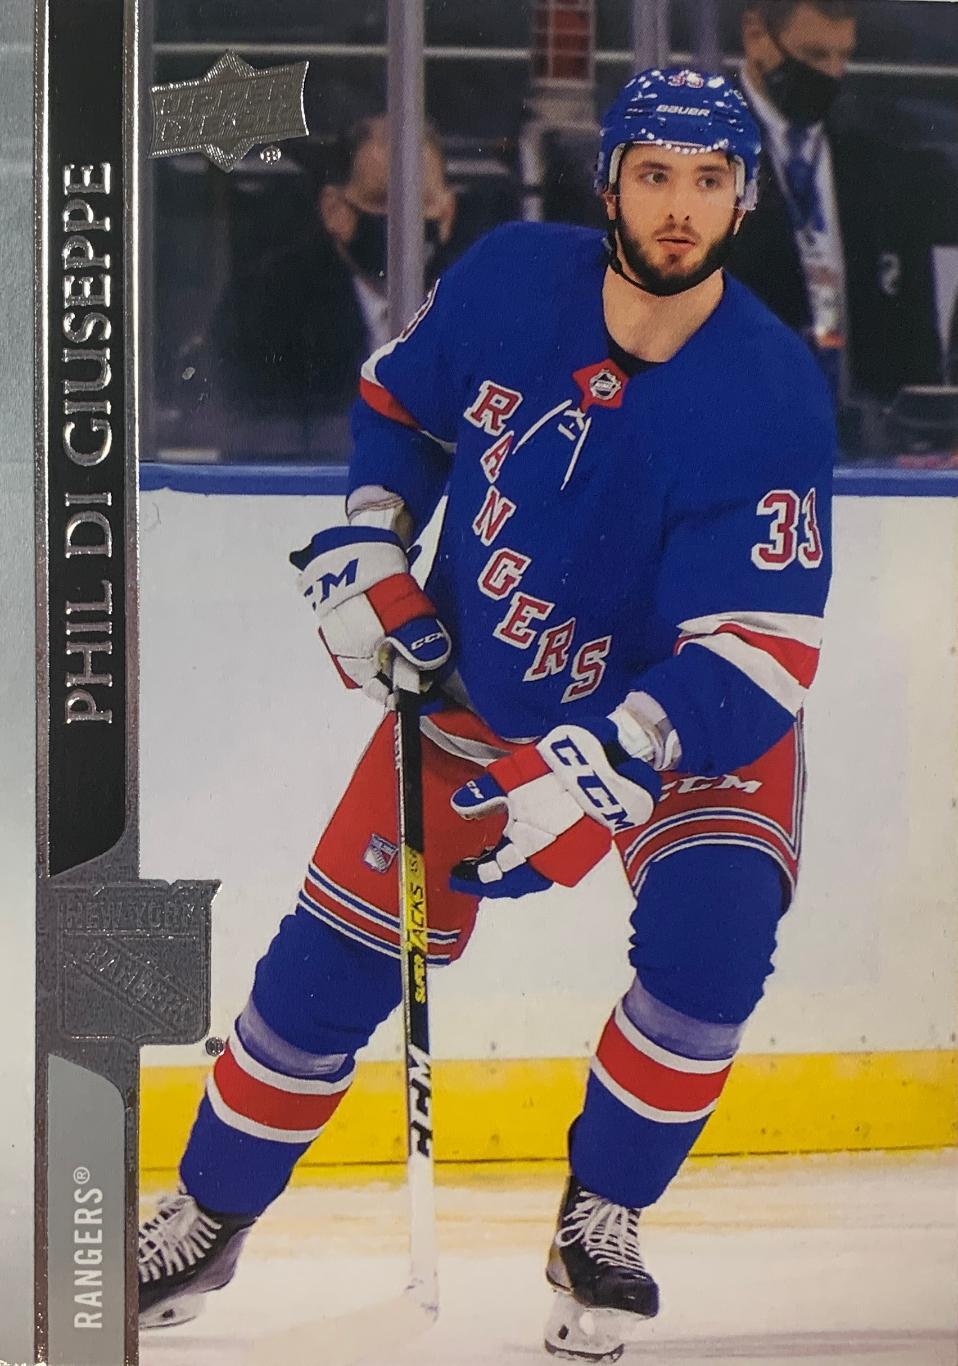 Хоккей. Карточка Phil Di Giuseppe -Филлип Ди Джузеппе (New York Rangers) НХЛ/NHL